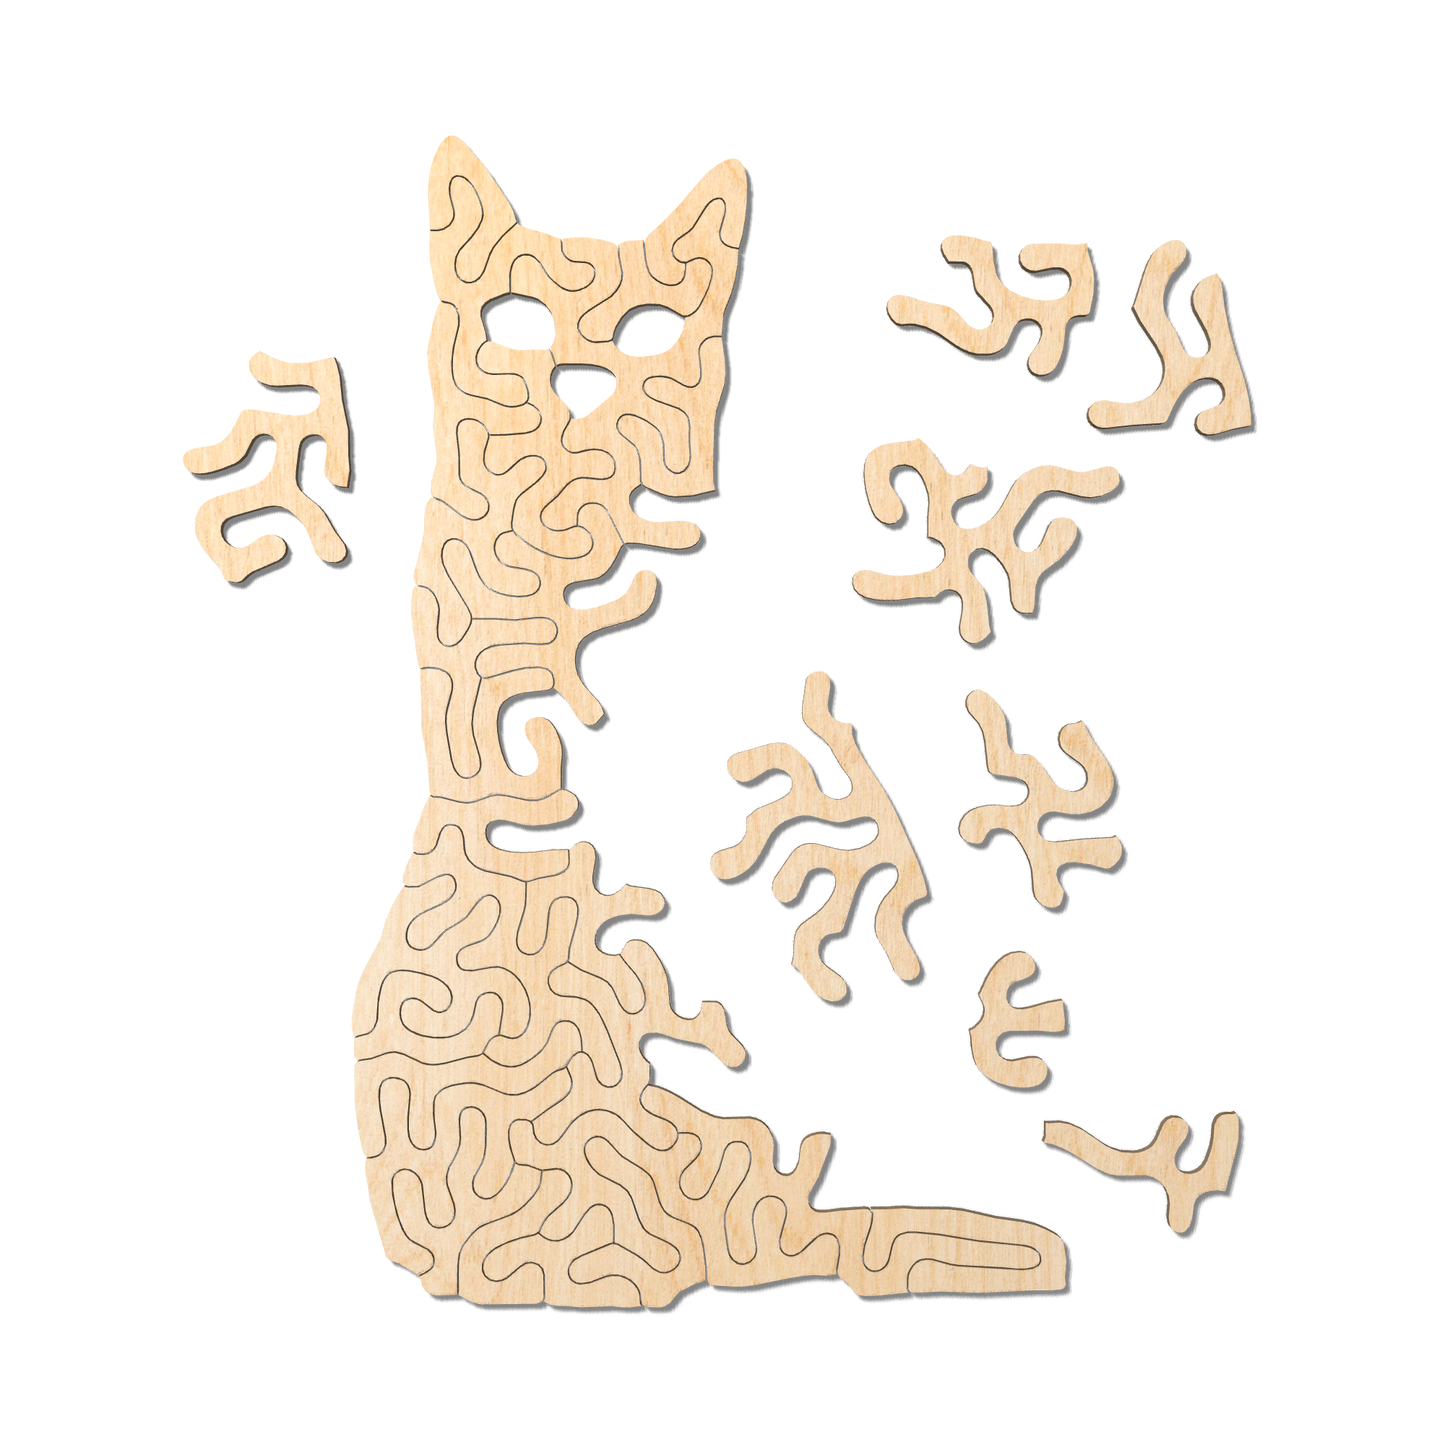 cat | Wooden Children's Puzzle | Entropy series | 35 pieces